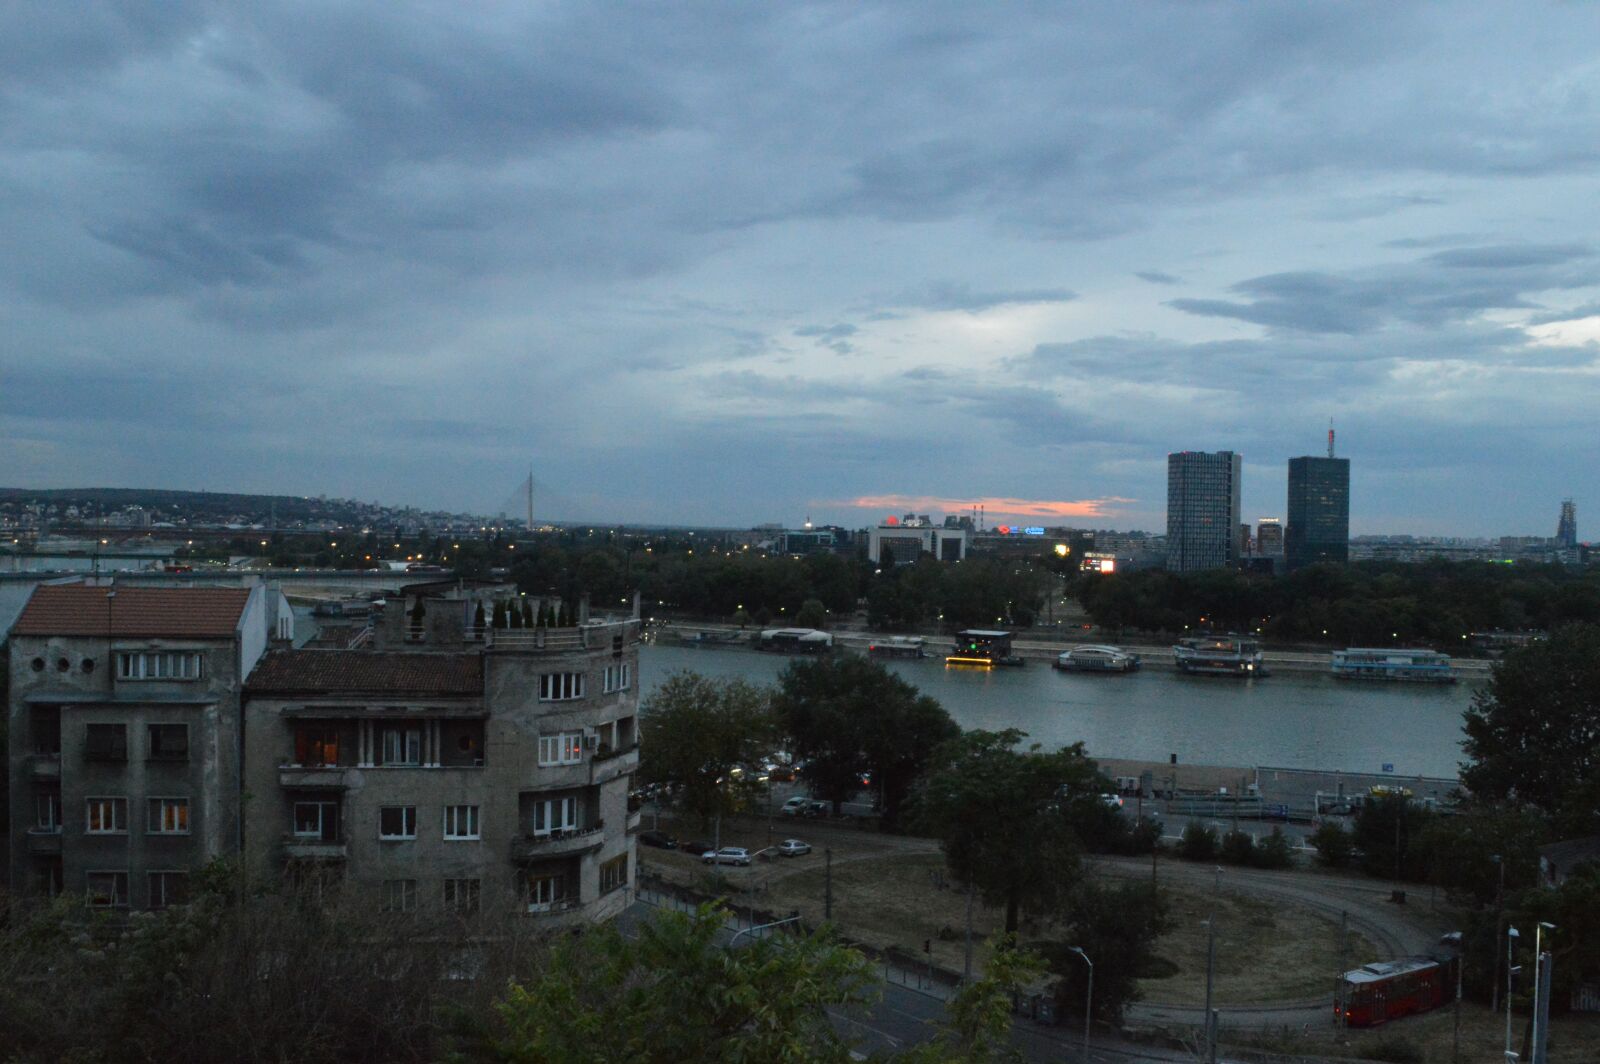 Nikon D3200 sample photo. "City, panorama, belgrade" photography